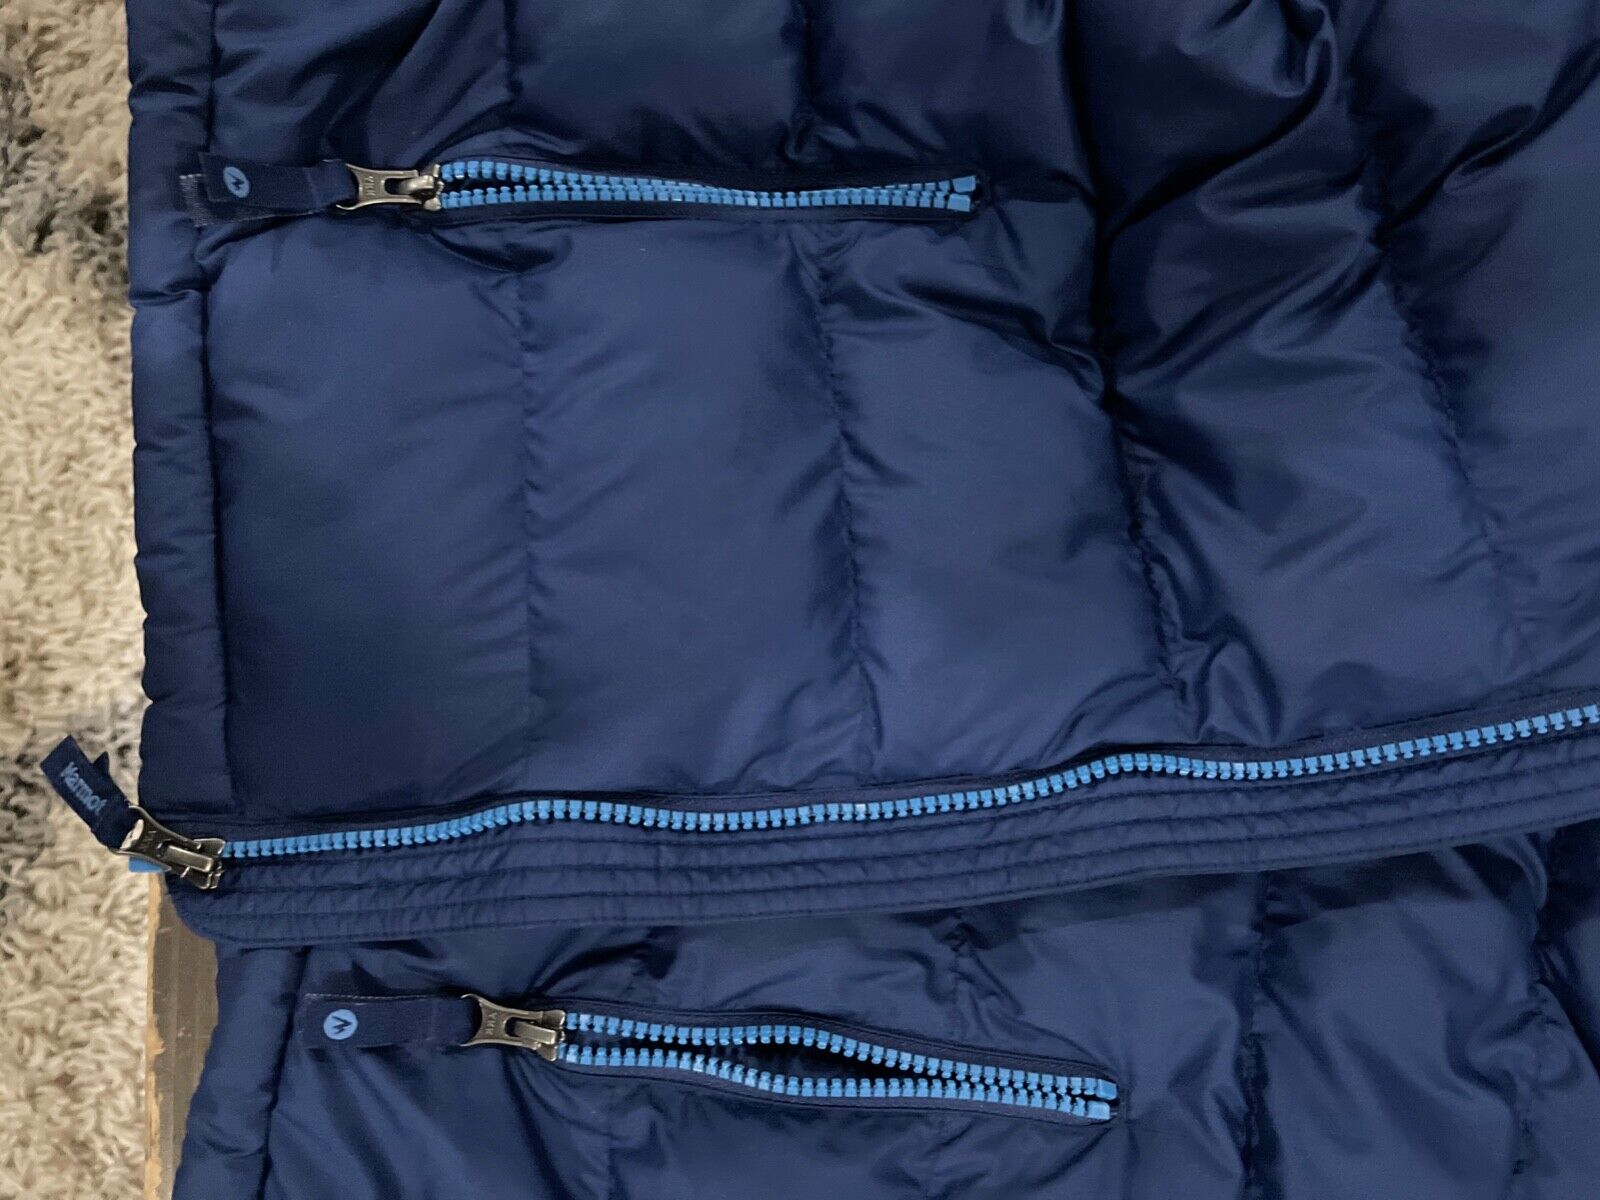 Blue marmot jacket childrens size medium preowned - image 4